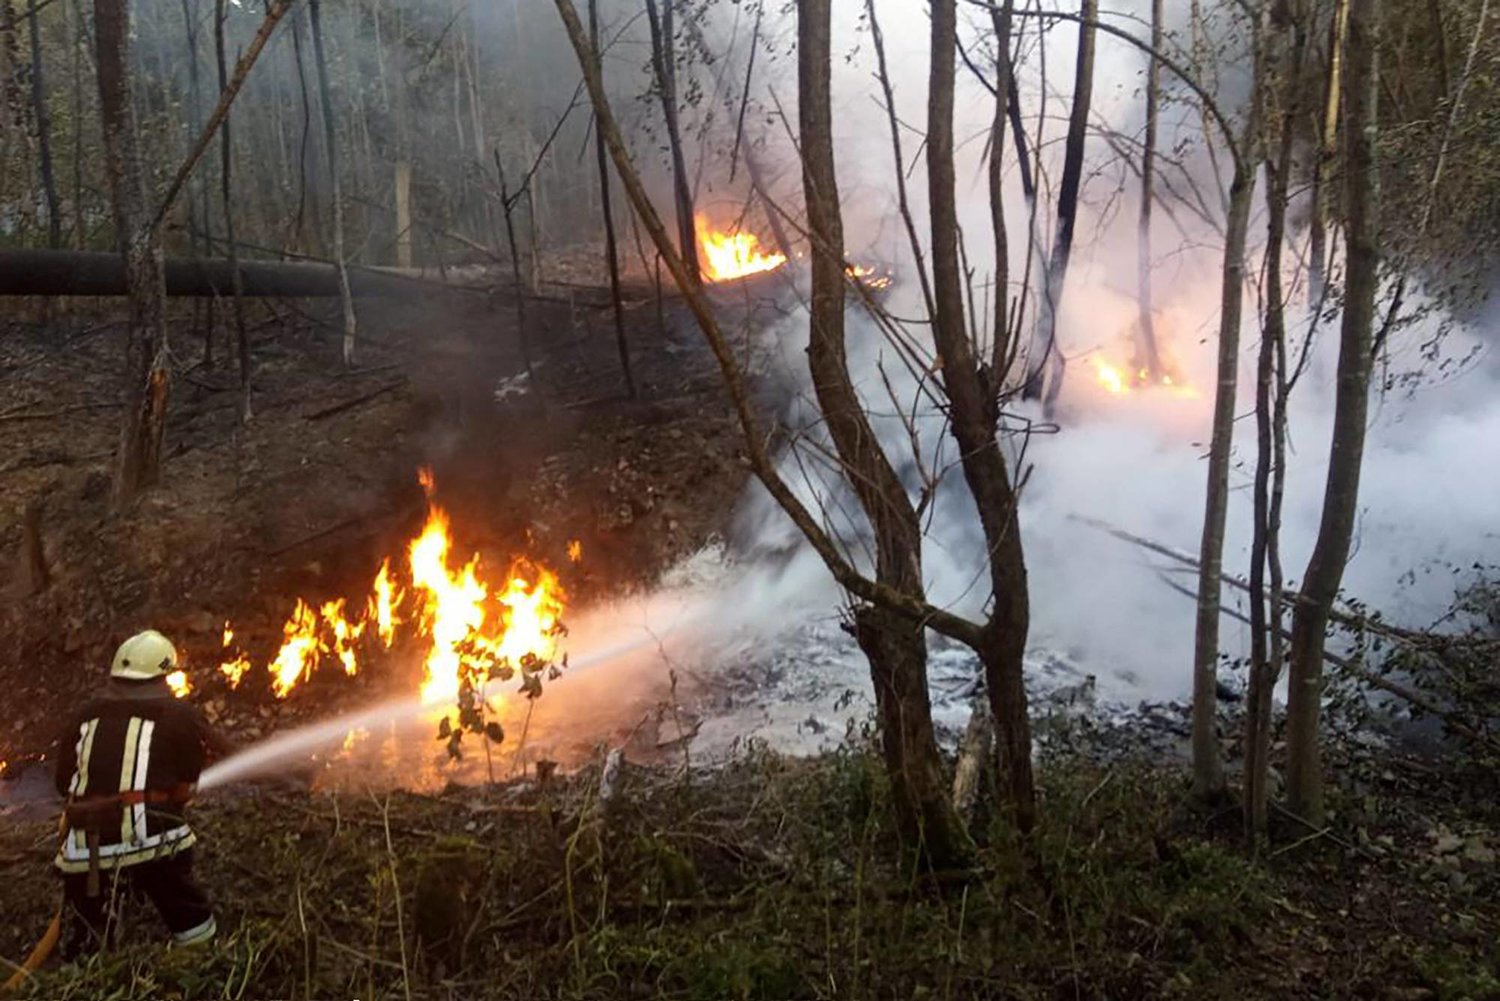  أحد  رجال الإنقاذ يعمل على إخماد الحريق الناجم عن انفجار في خط أنابيب النفط بالقرب من قرية ستريمبا (ا.ف.ب)